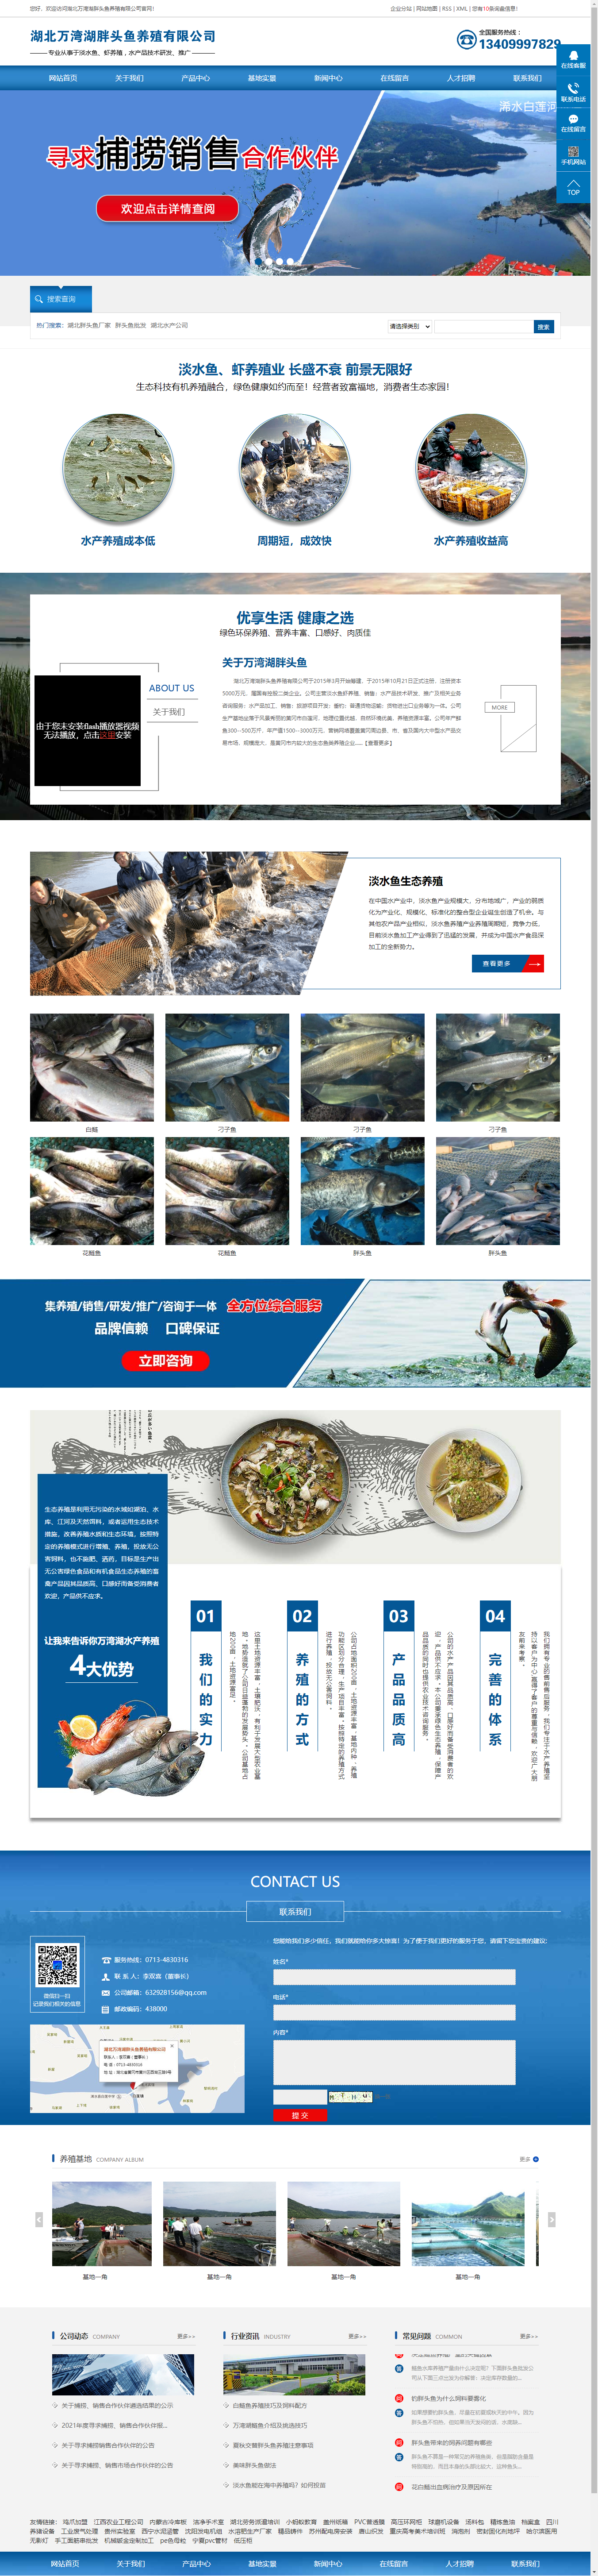 湖北万湾湖胖头鱼养殖有限公司网站案例